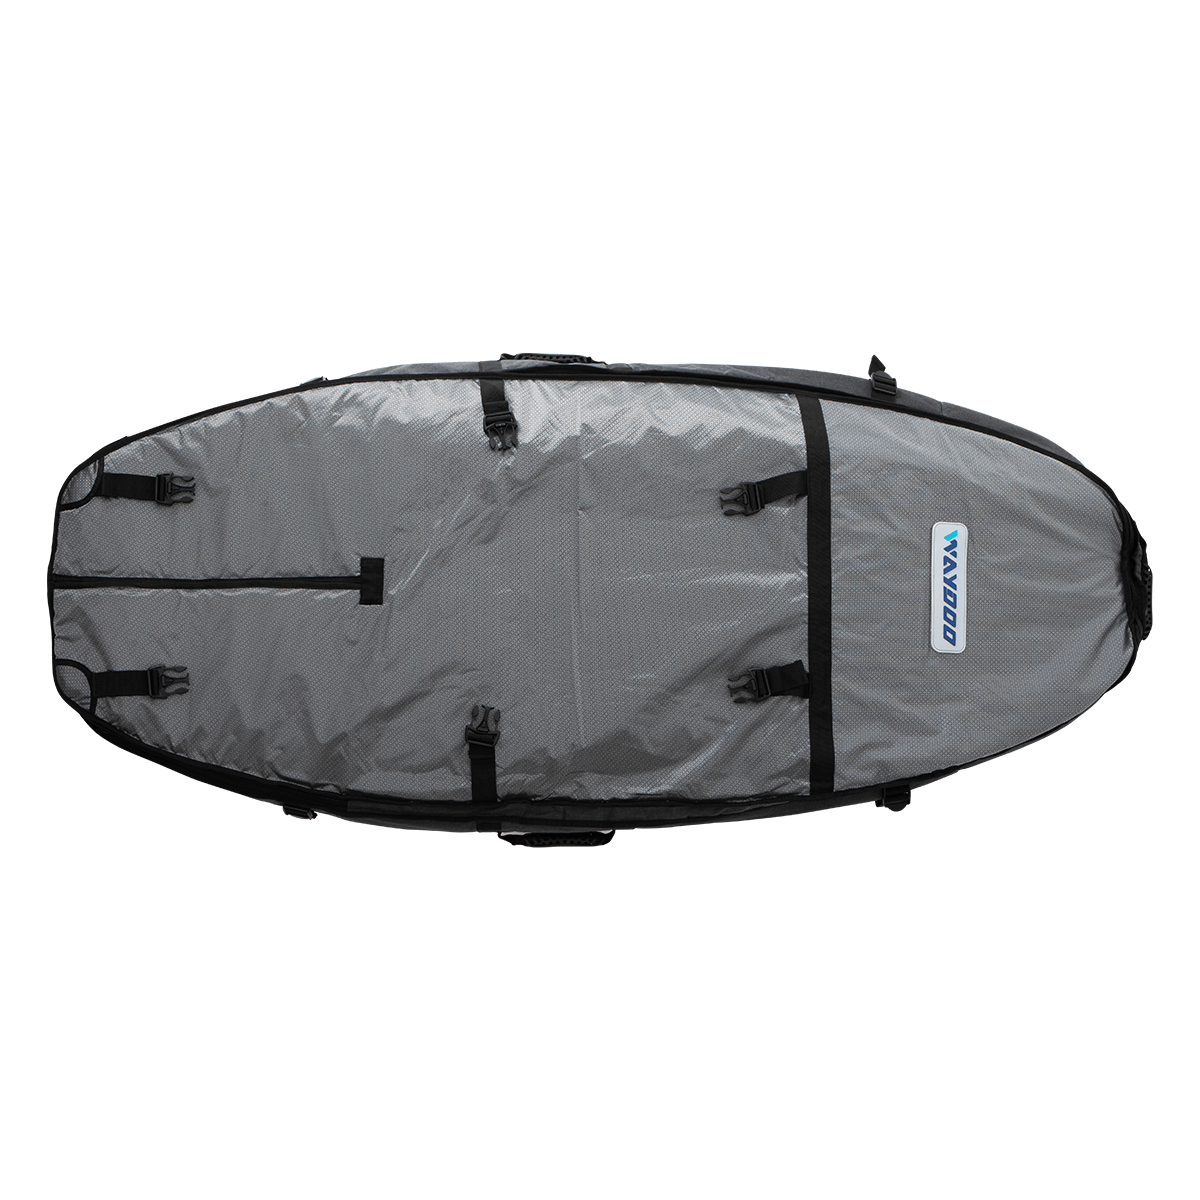 Mokan SurfPack - The Surfboard Carrying Waterproof Backpack